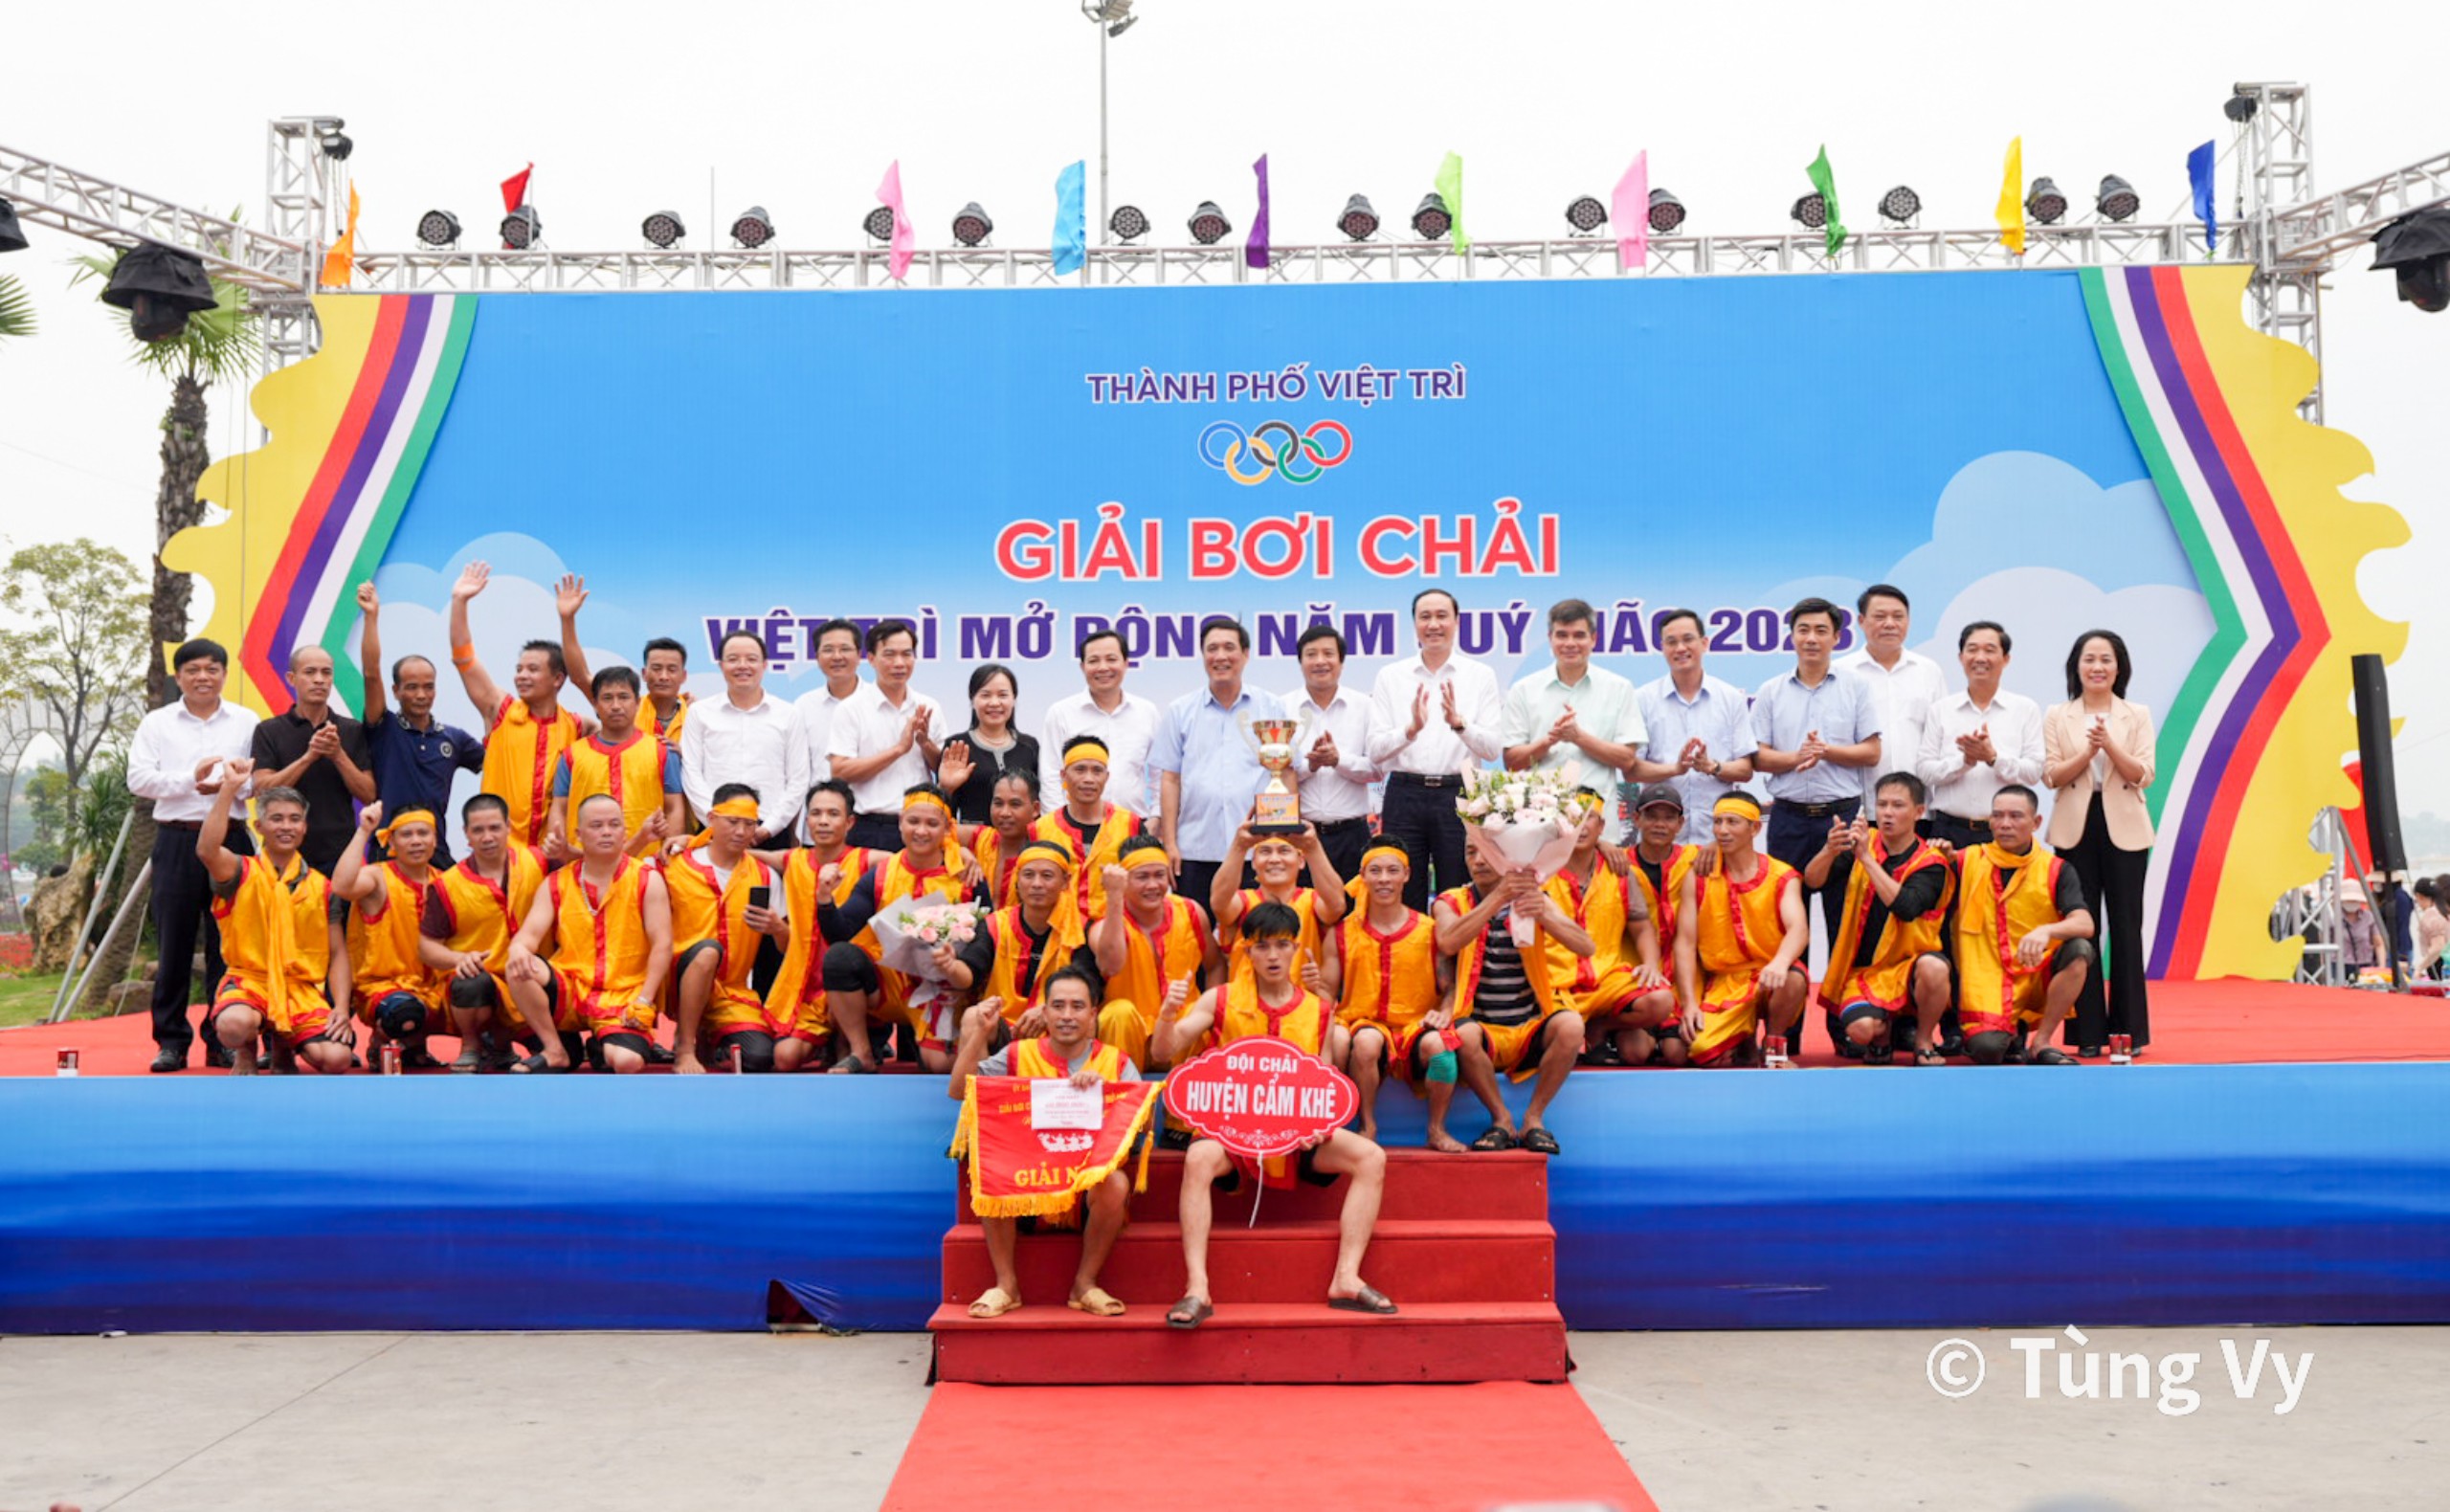 Sôi động giải bơi chải thành phố Việt Trì mở rộng năm 2023